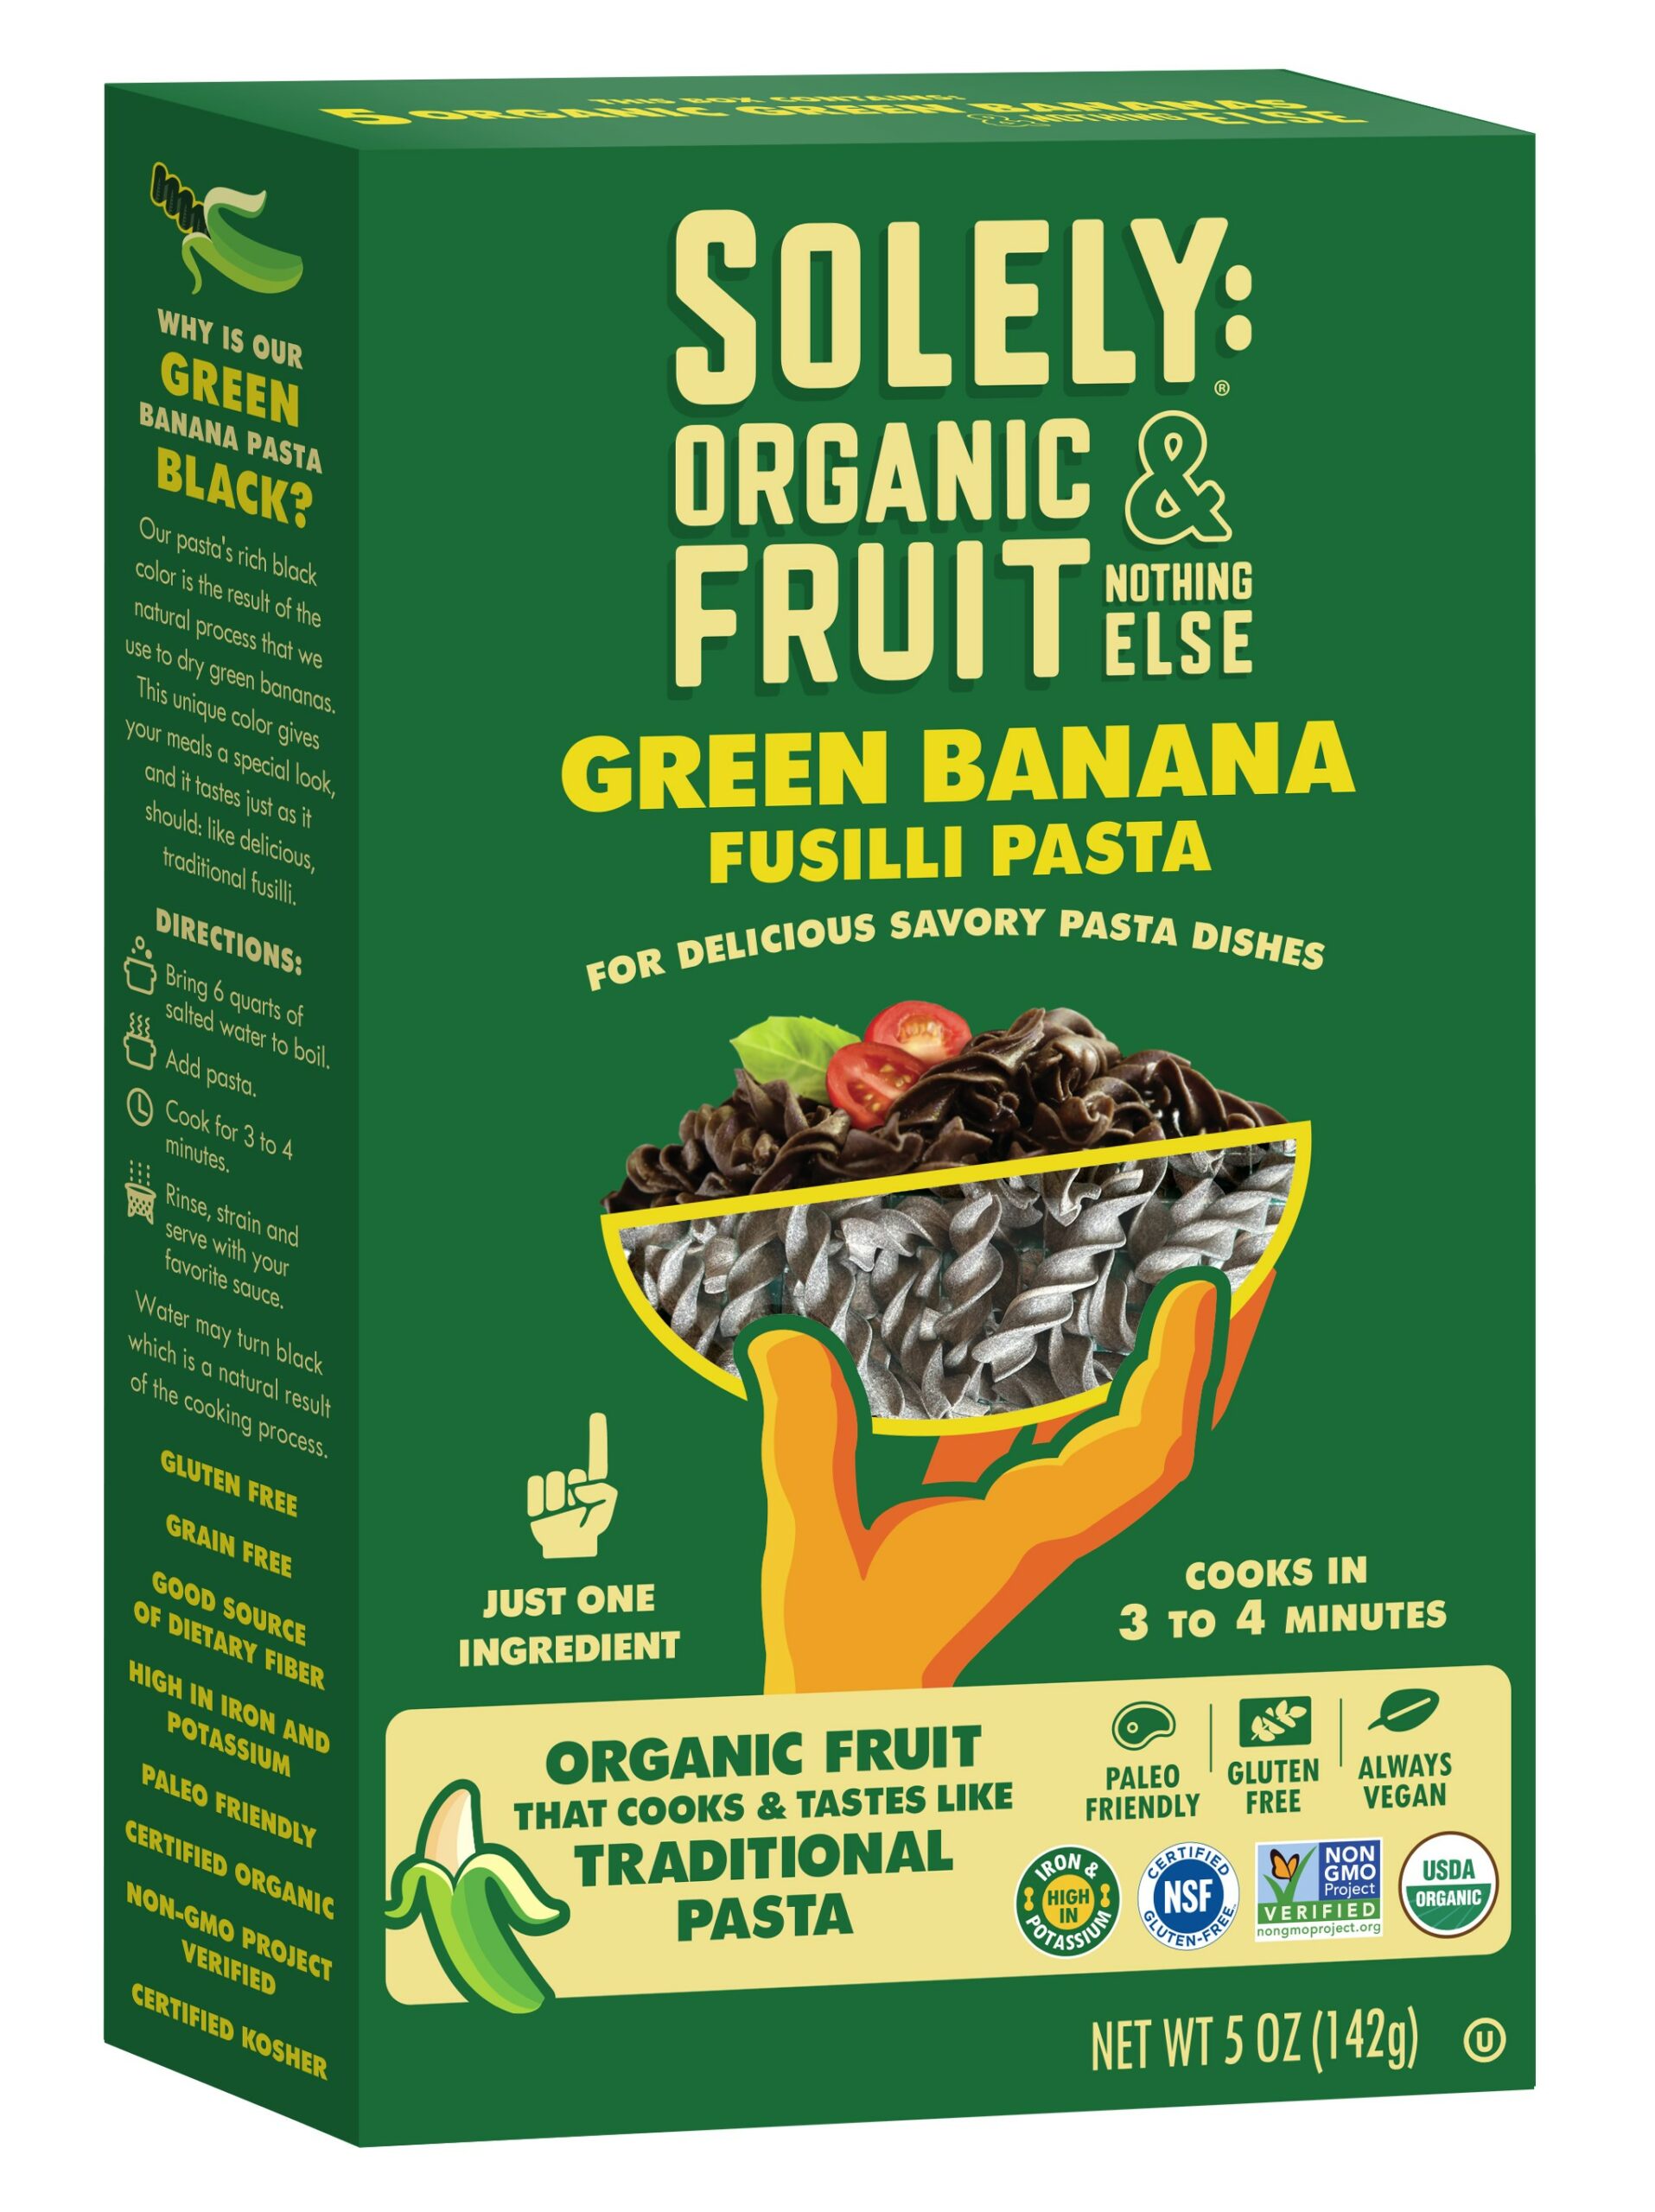 green banana pasta packaging